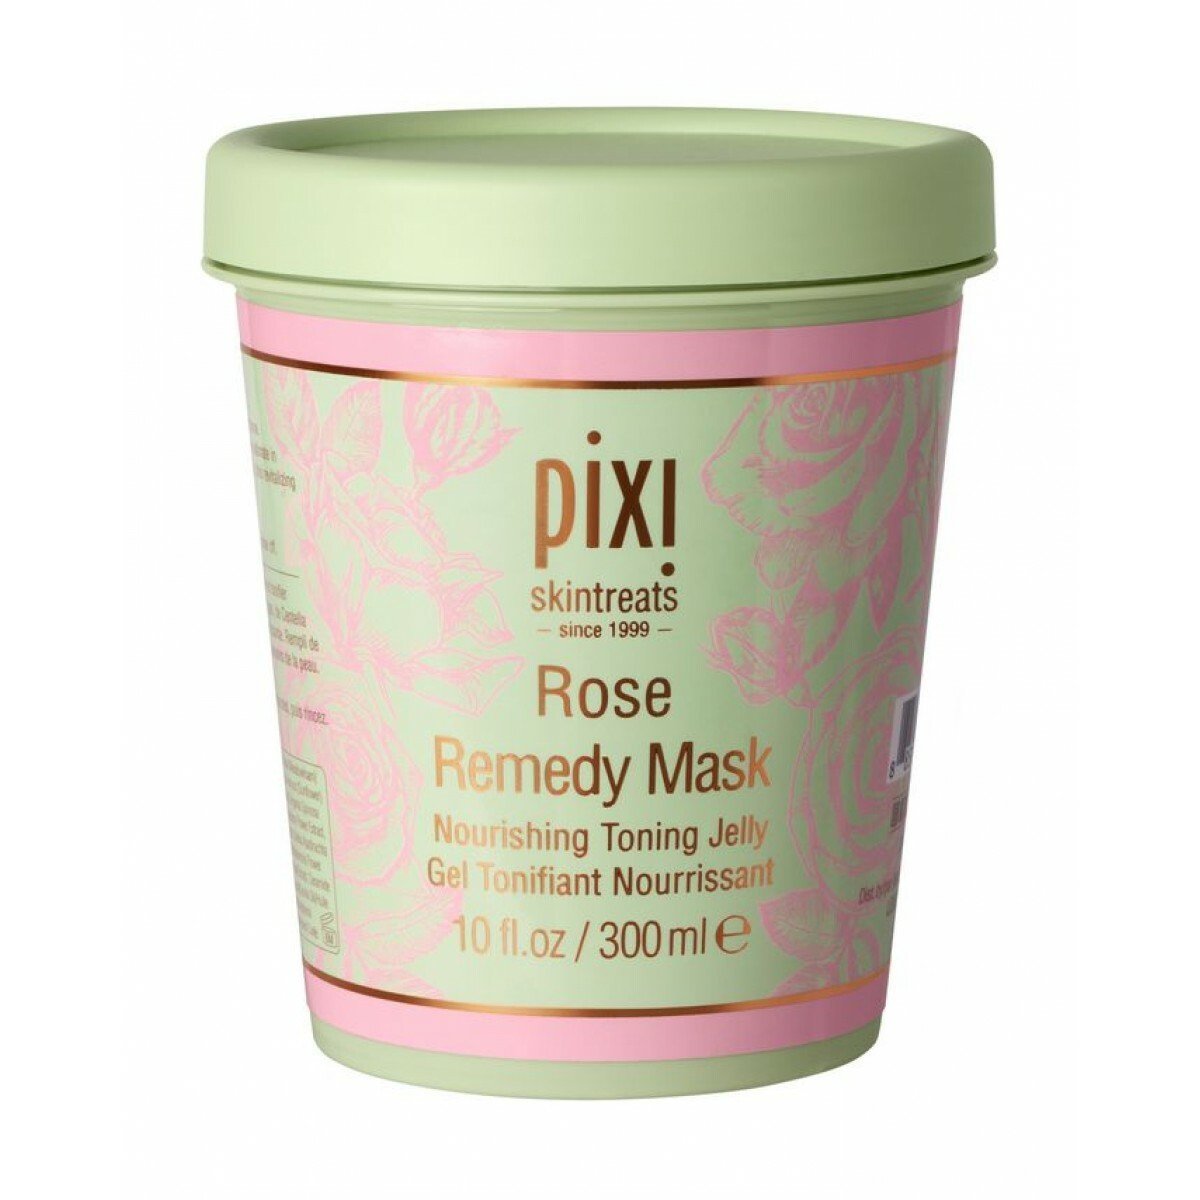 Питательная маска для лица Pixi Rose Remedy Mask